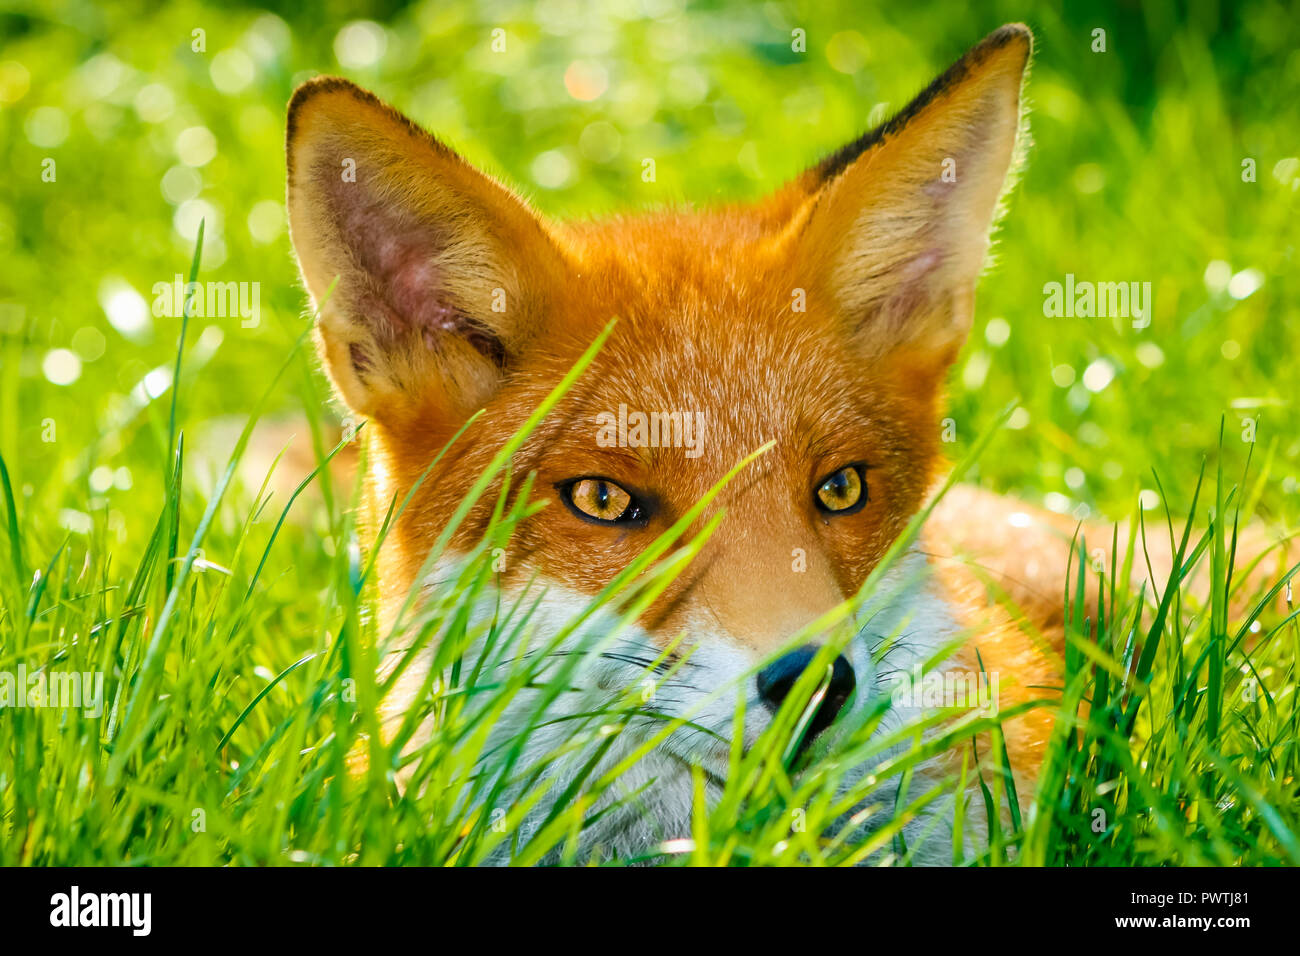 Fox, salvaje, nativo, icónicas mamífero. Un primer plano de un joven zorro sentado en la hierba verde brillante durante el verano. Nombre científico: Vulpes vulpes Foto de stock